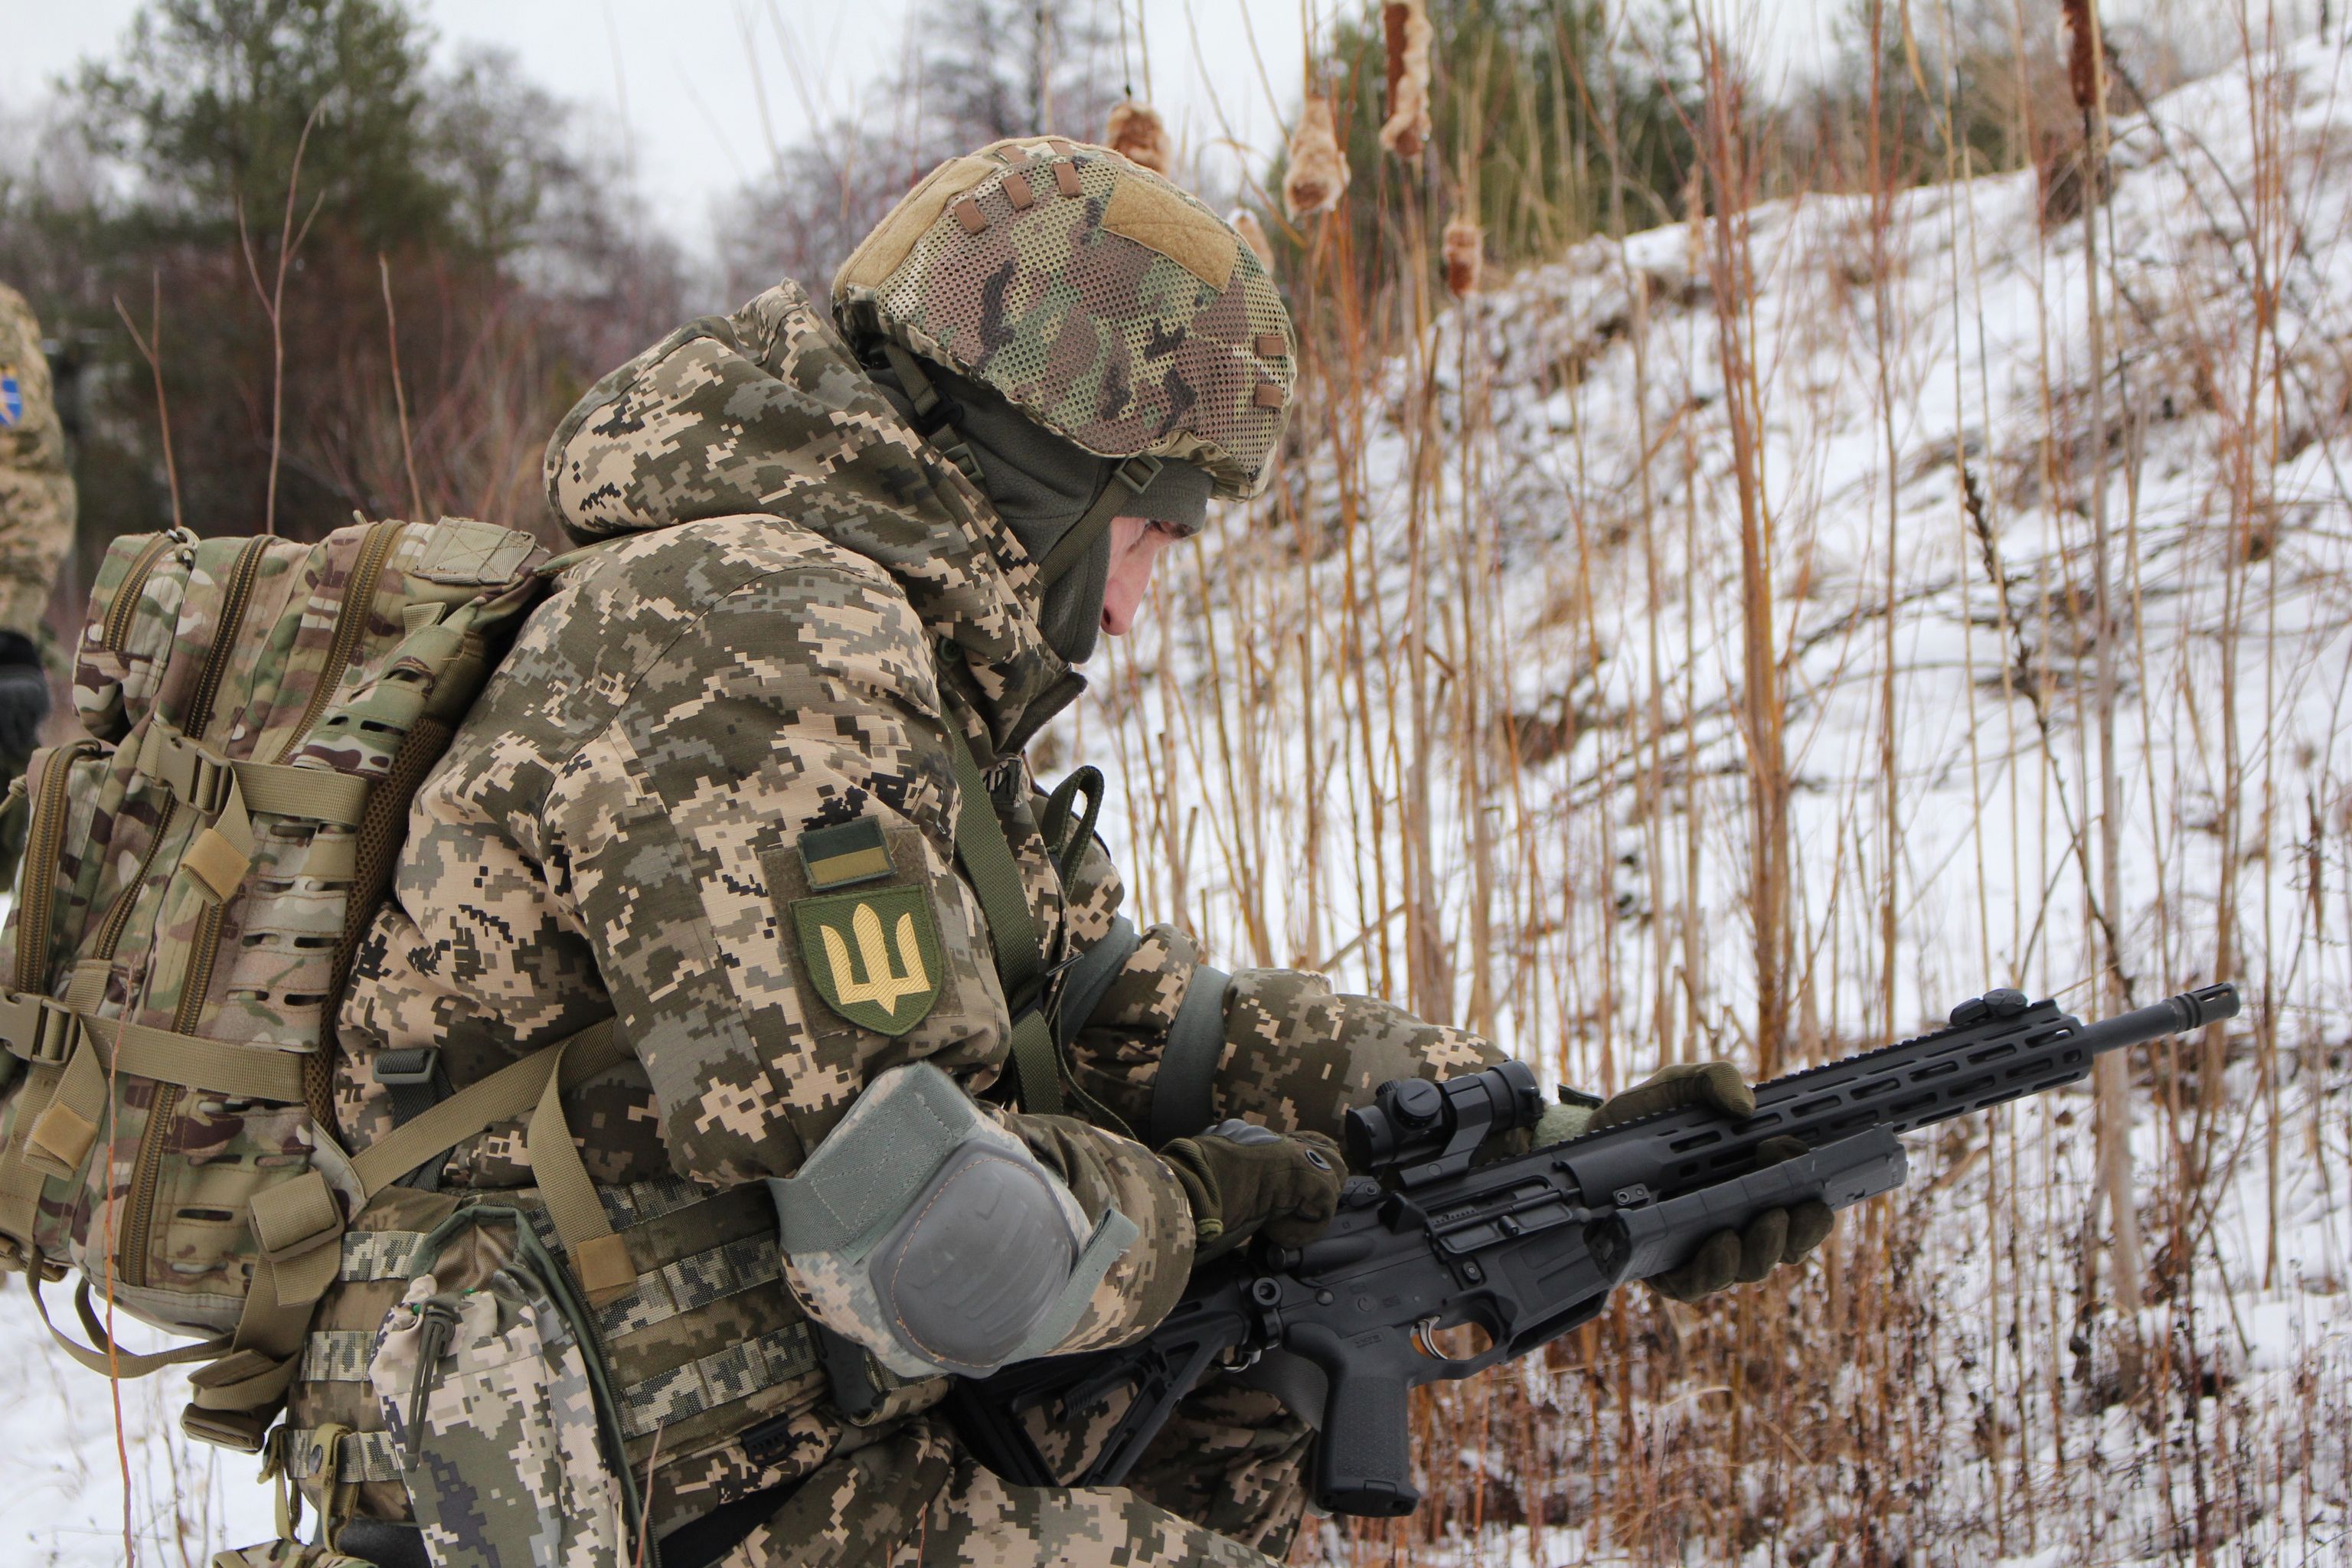 Amid fierce defense, Ukraine foils Russian blitz victory plans